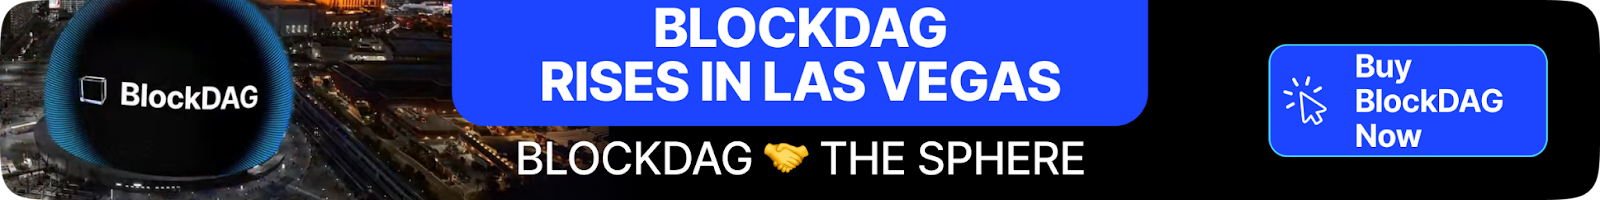 The sphere of blockdag in Las Vegas is booming